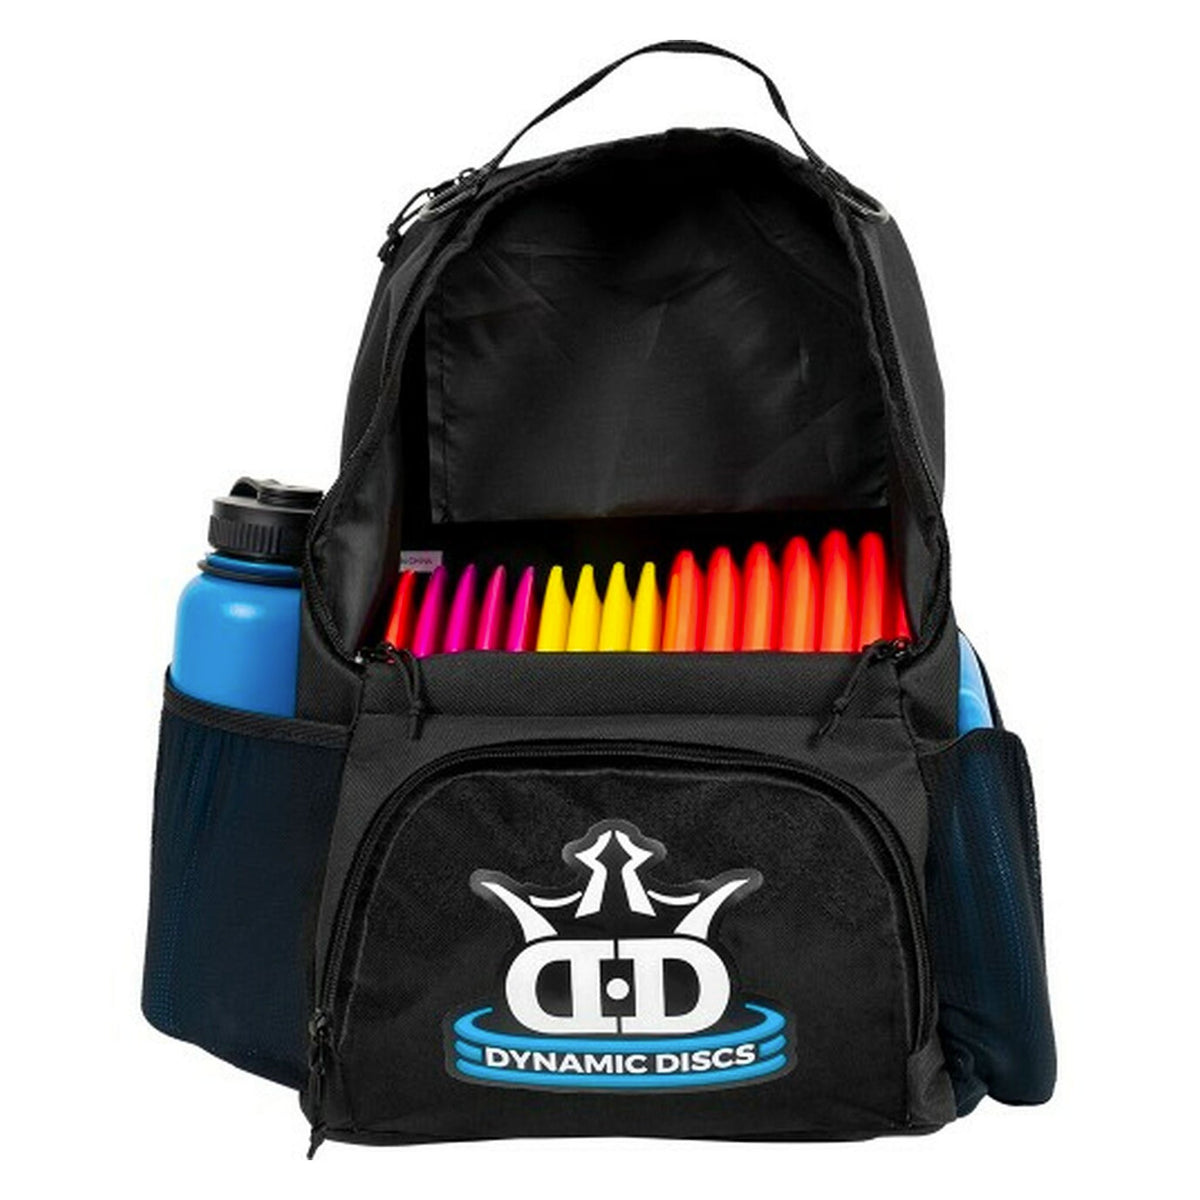 Dynamic Discs Cadet Disc Golf Backpack - Black